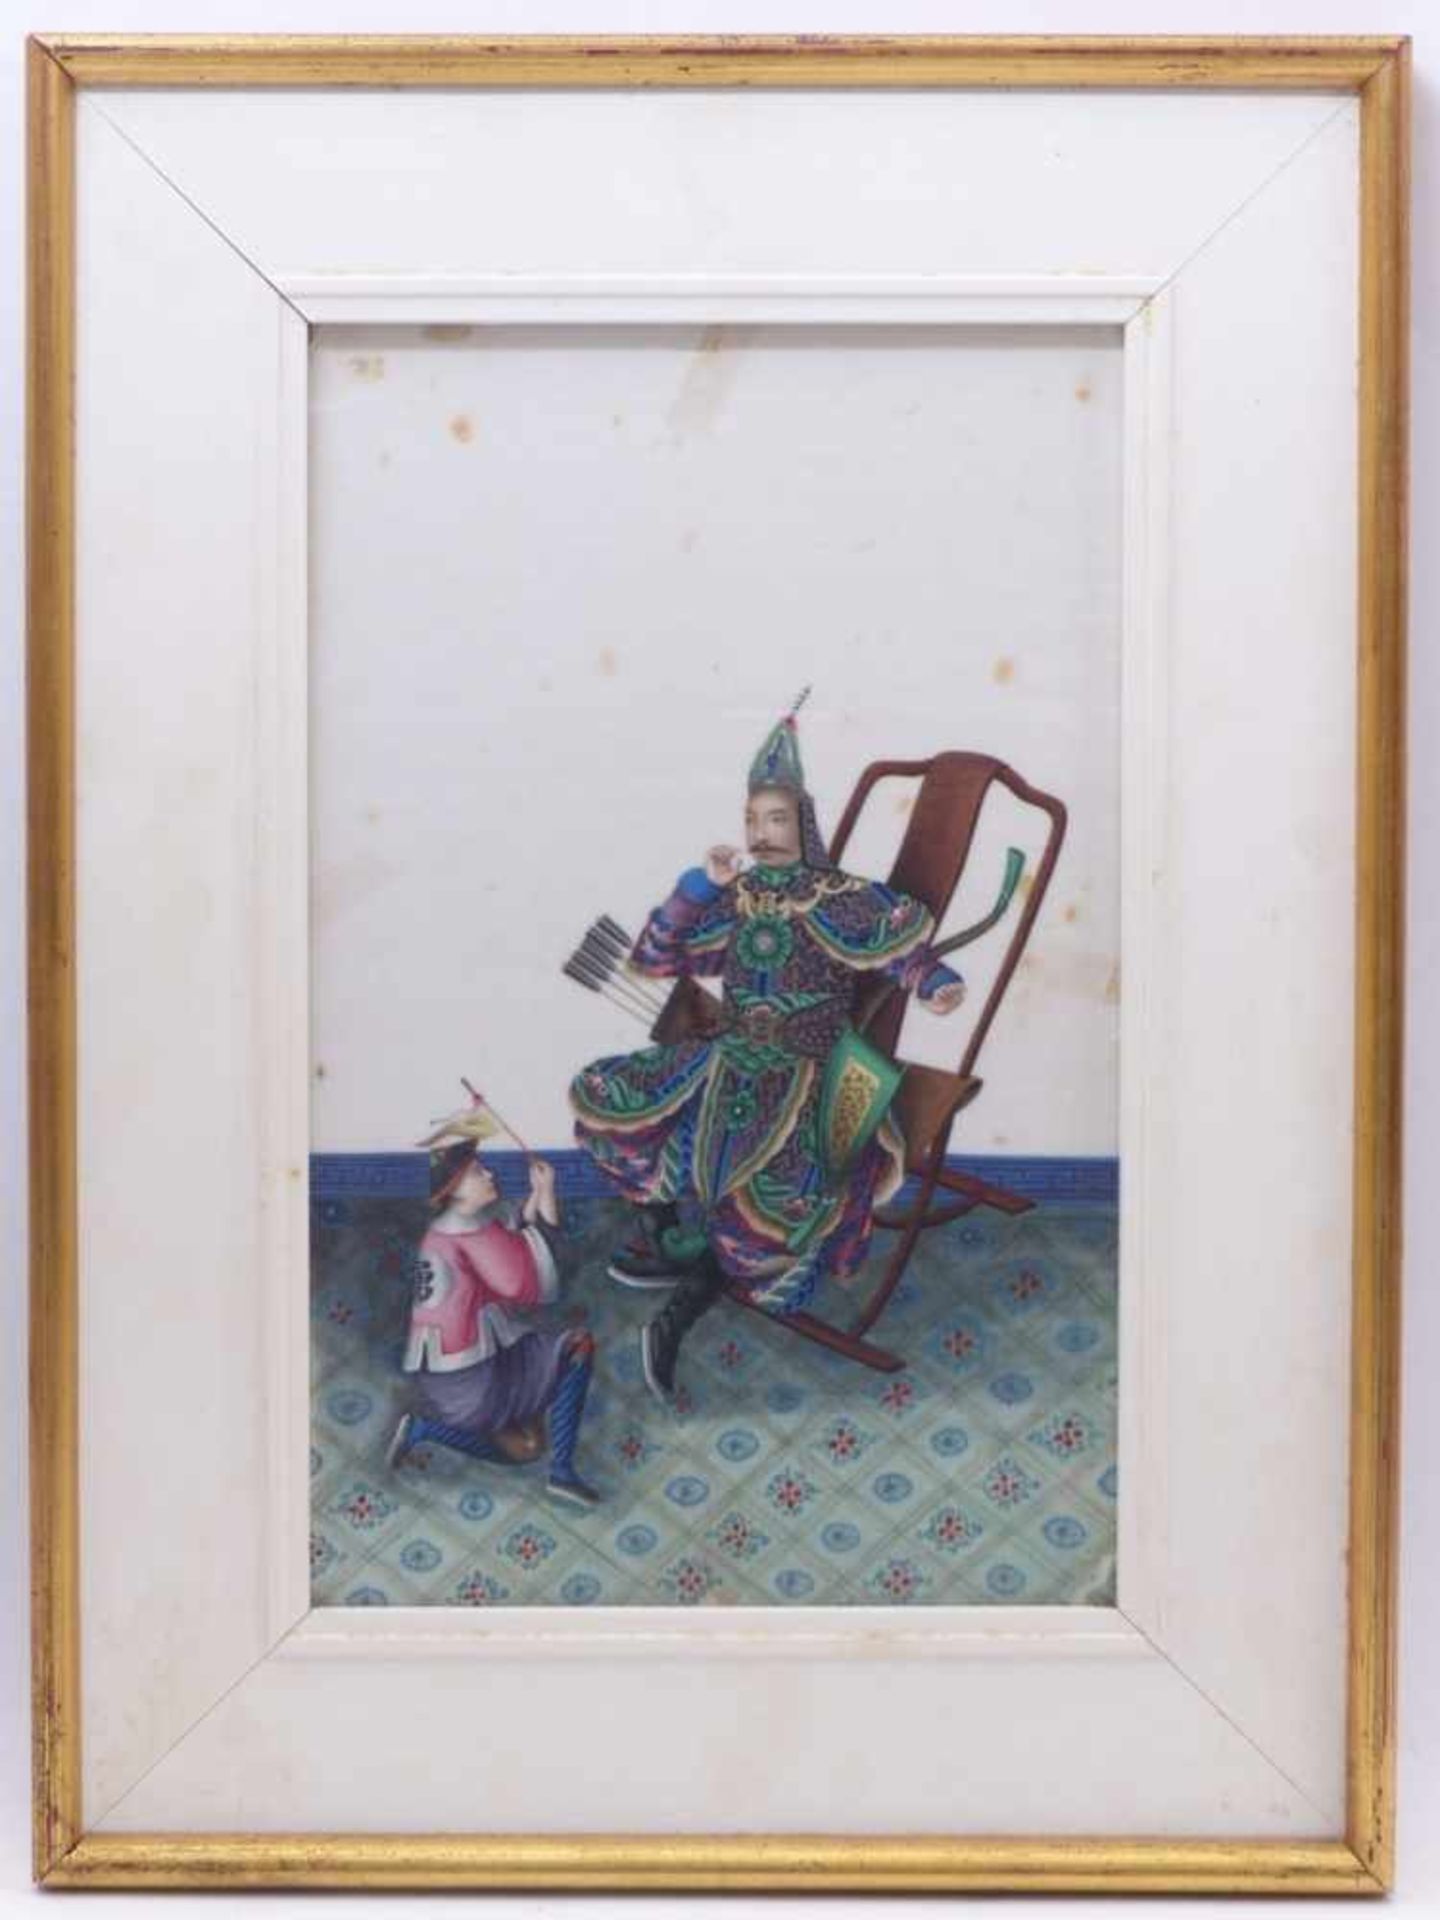 Höfisches Interieur mit auf einem Stuhl sitzenden KriegerChina, Qing-Dynastie - 19. Jh.Gouache/ - Bild 2 aus 2